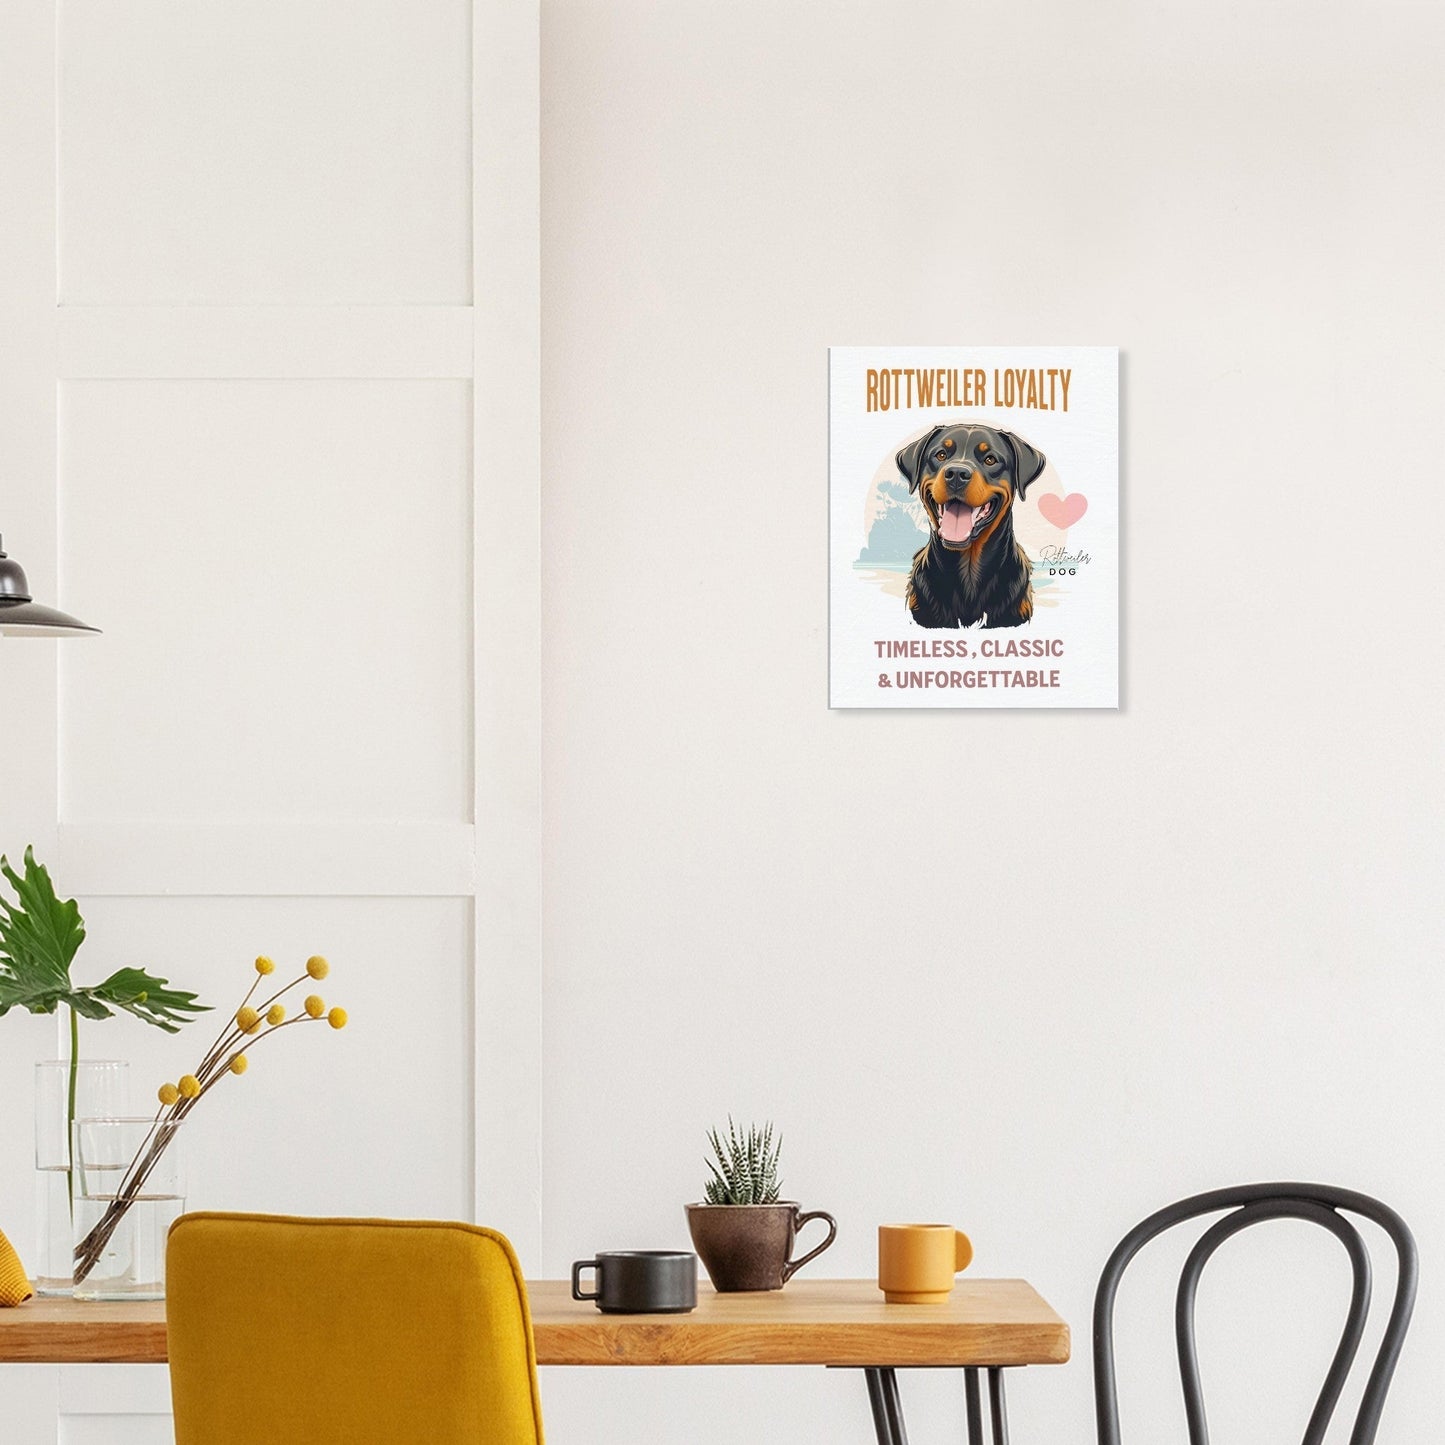 Rottweiler Canvas Print, Rottweiler Poster,rottweiler, Rottweiler Mom Gift, Rottweiler Gifts, Rottweiler decor,rottweiler dad